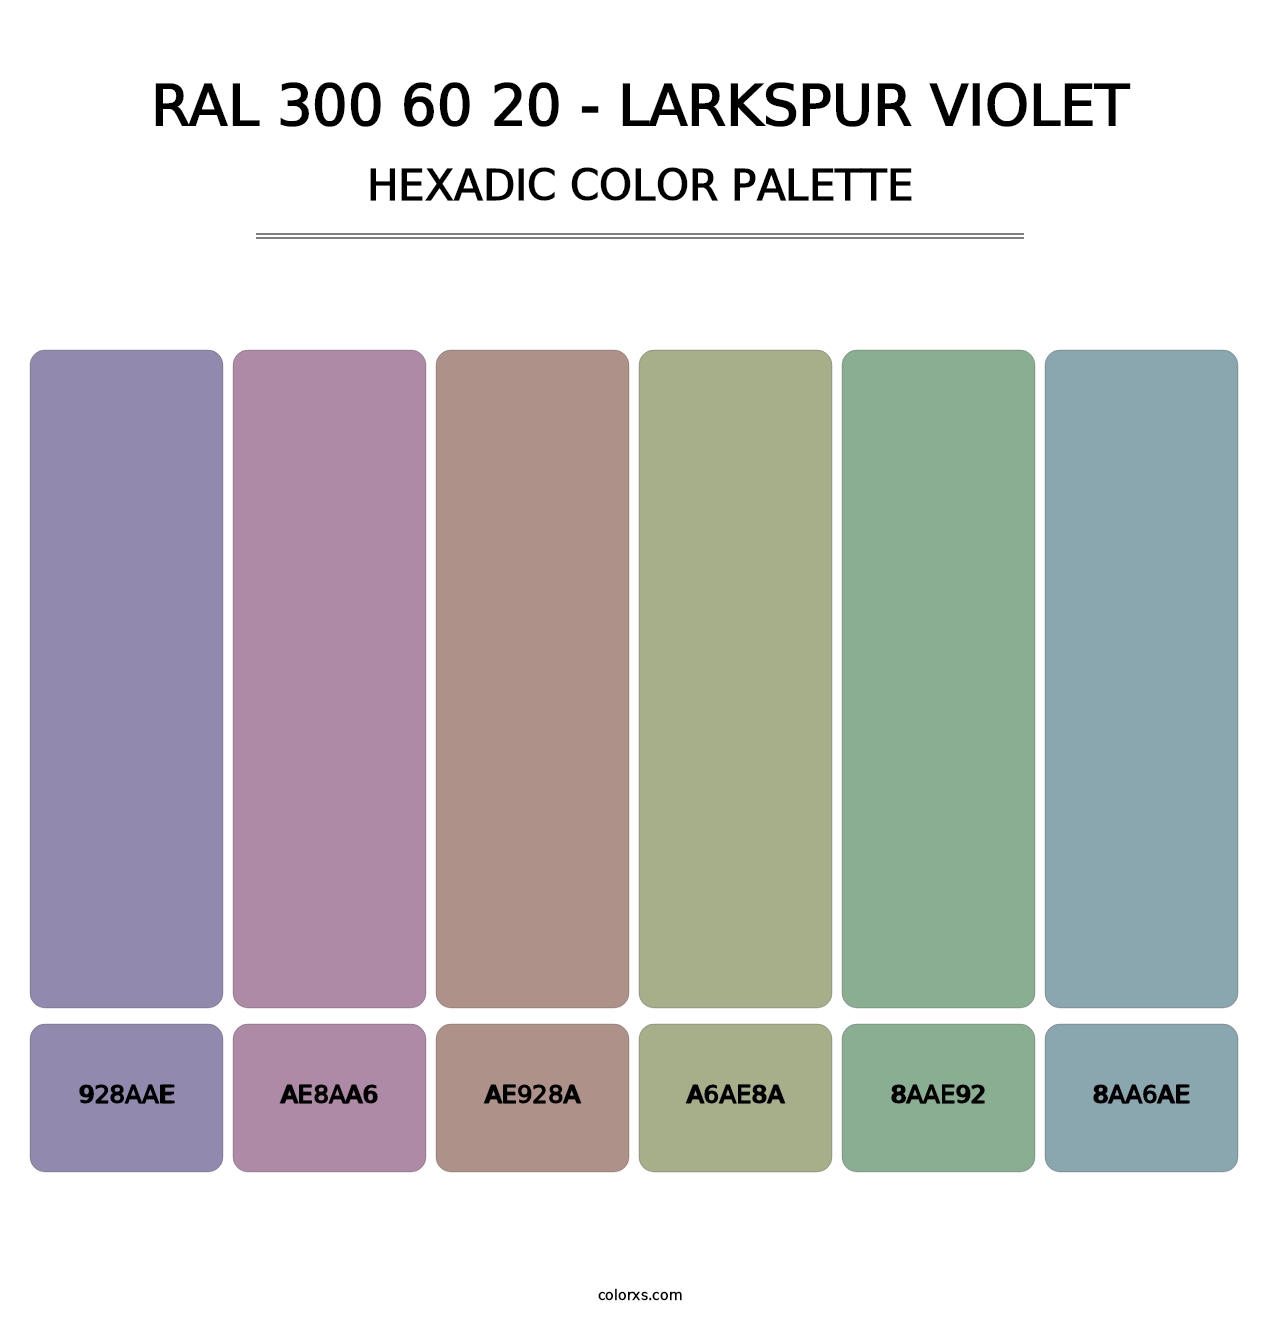 RAL 300 60 20 - Larkspur Violet - Hexadic Color Palette